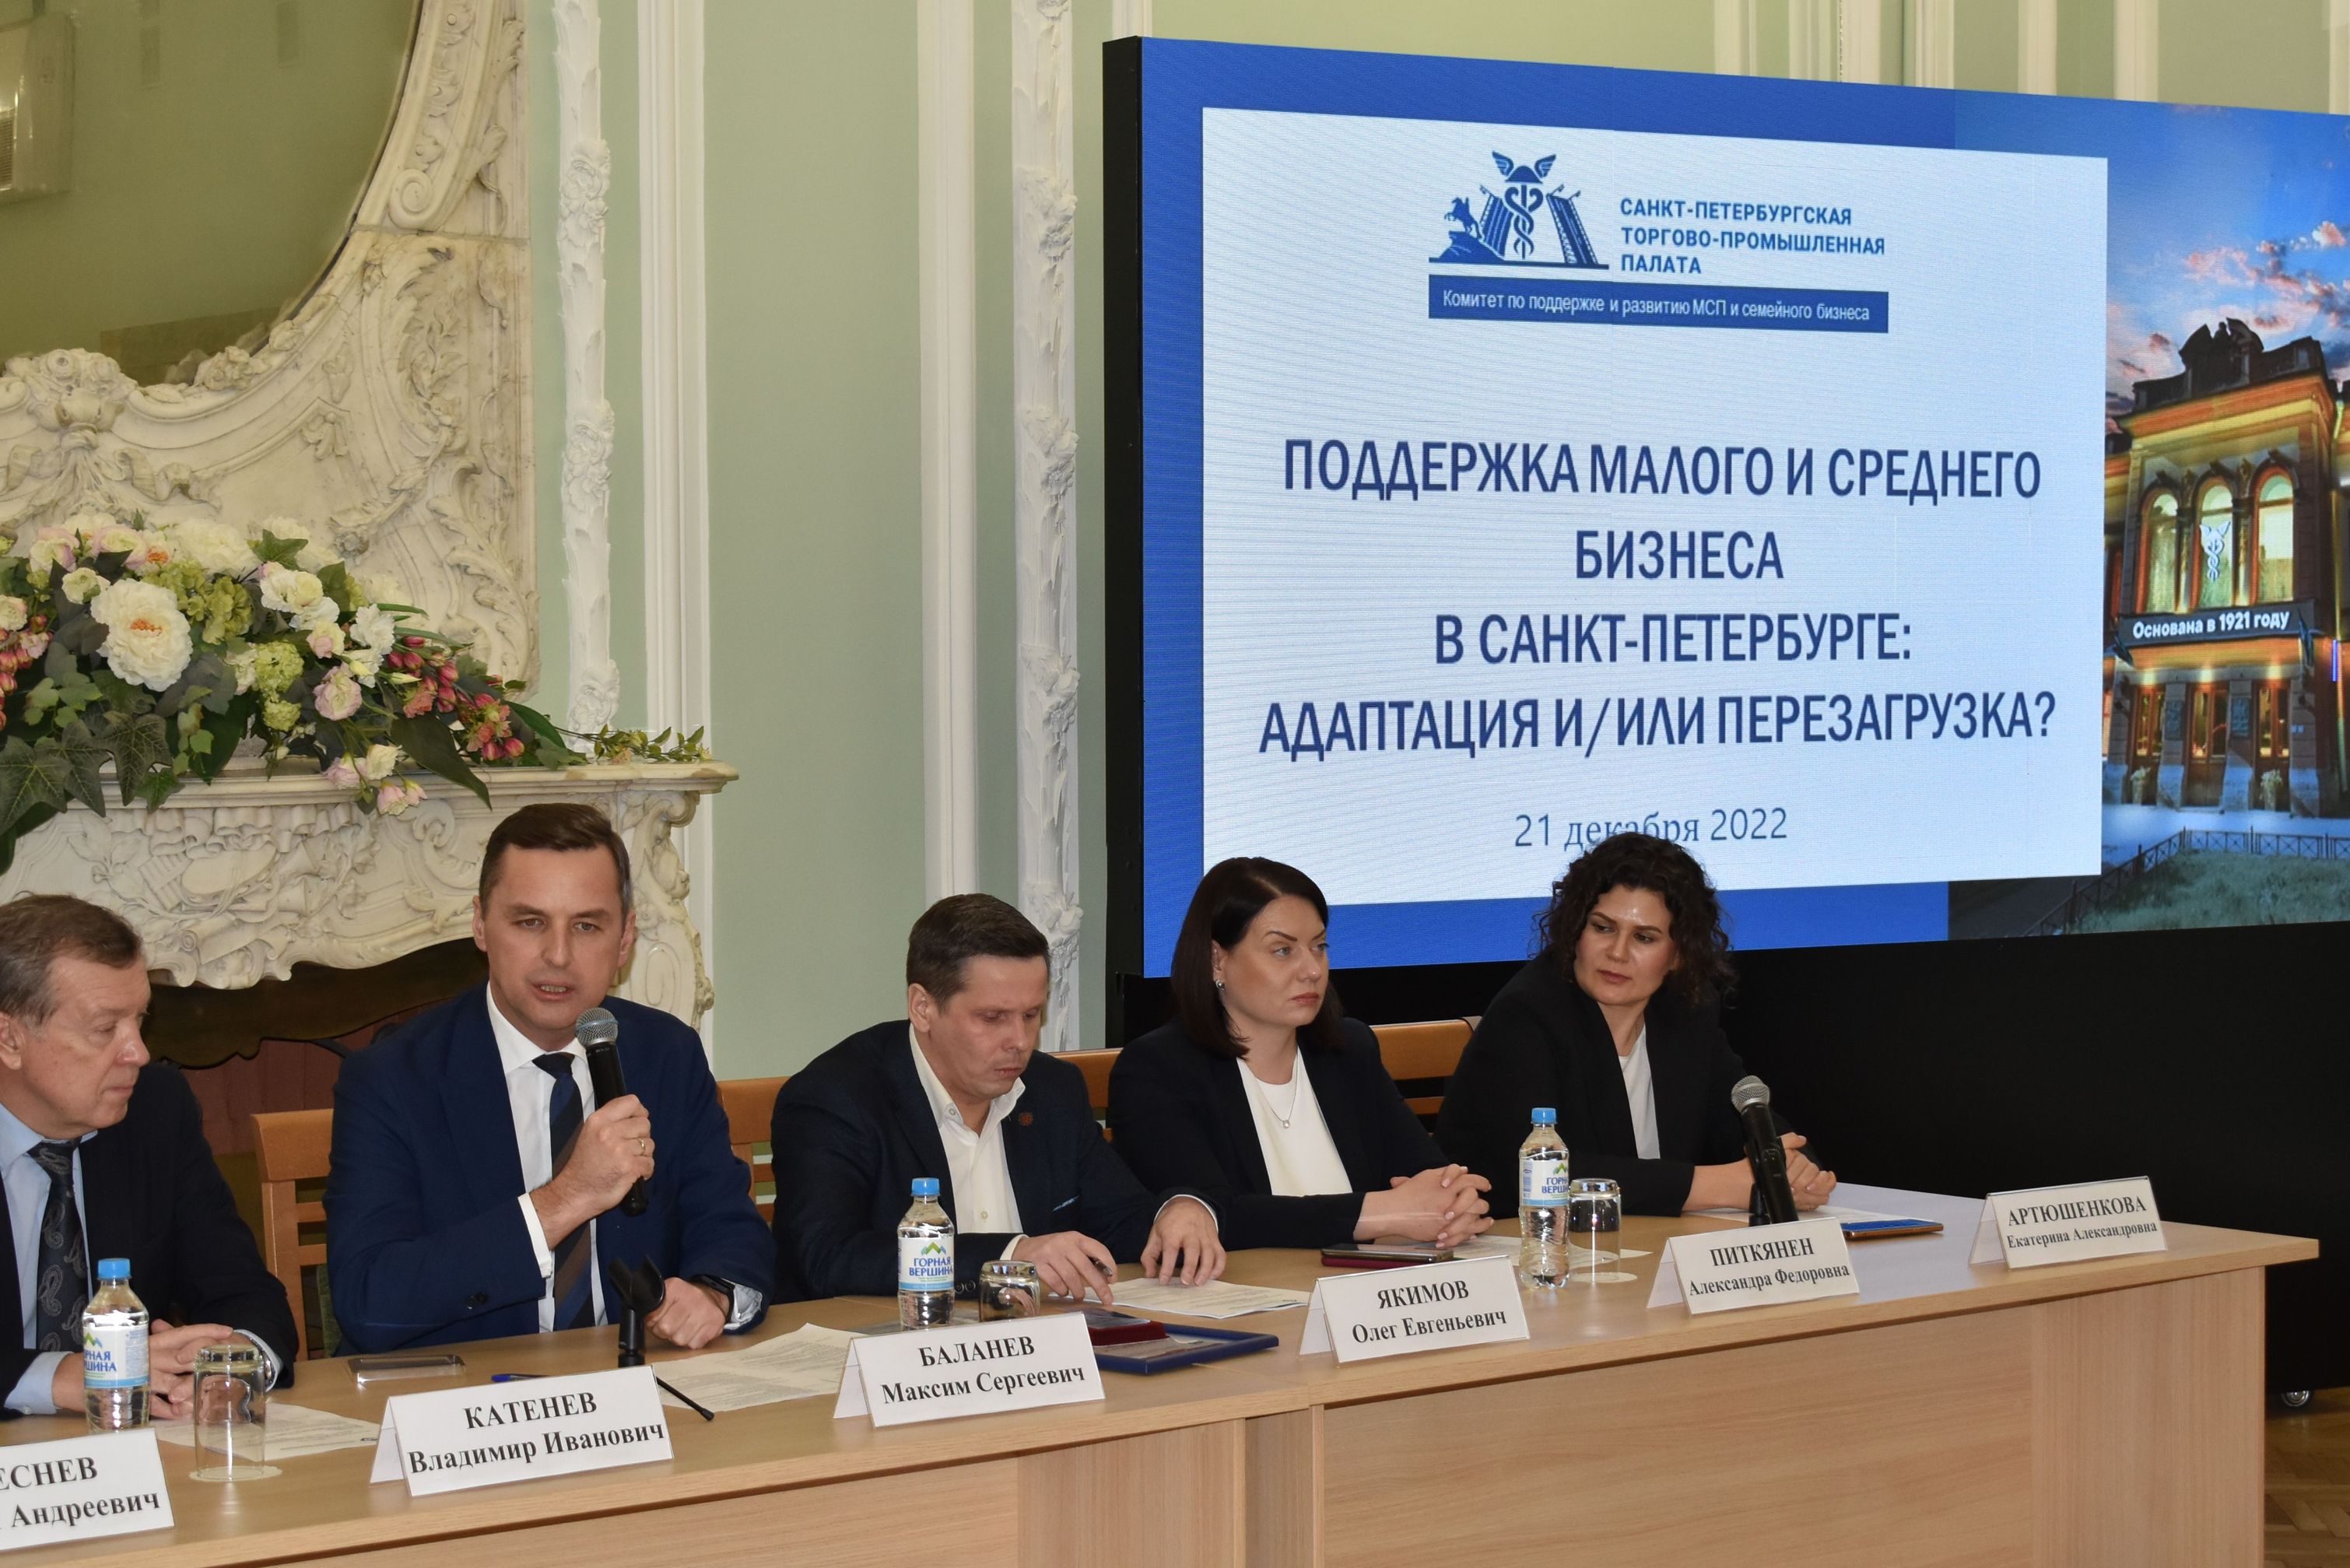 В Санкт-Петербургской торгово-промышленной палате прошло итоговое заседание Комитета по поддержке и развитию МСП и семейного бизнеса